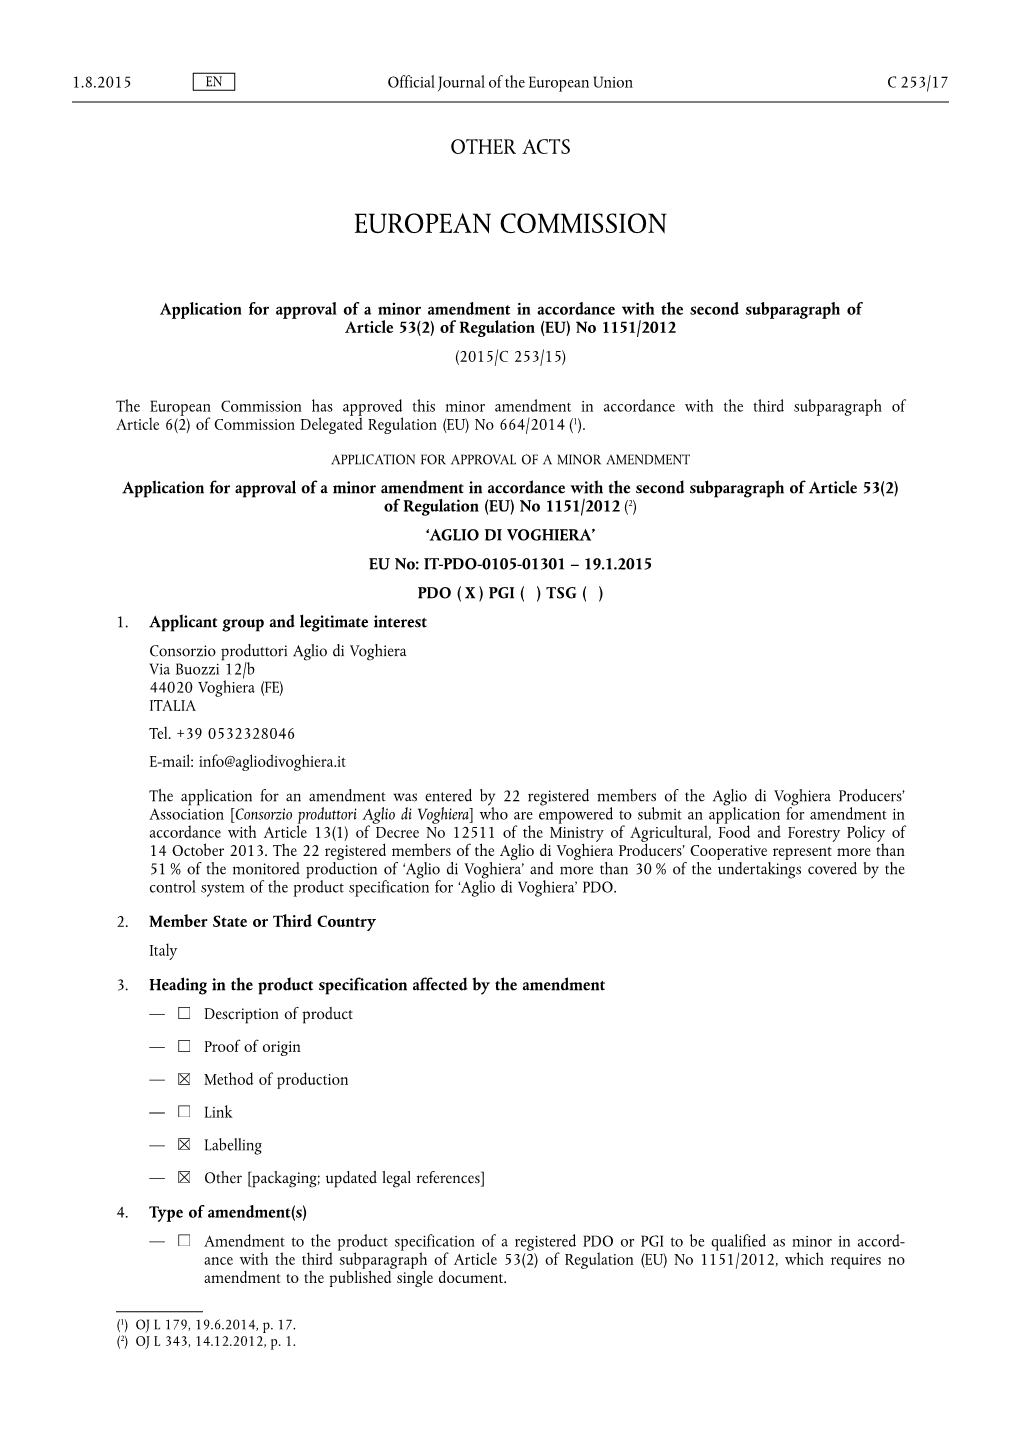 Of Regulation (EU) No 1151/2012 (2015/C 253/15)